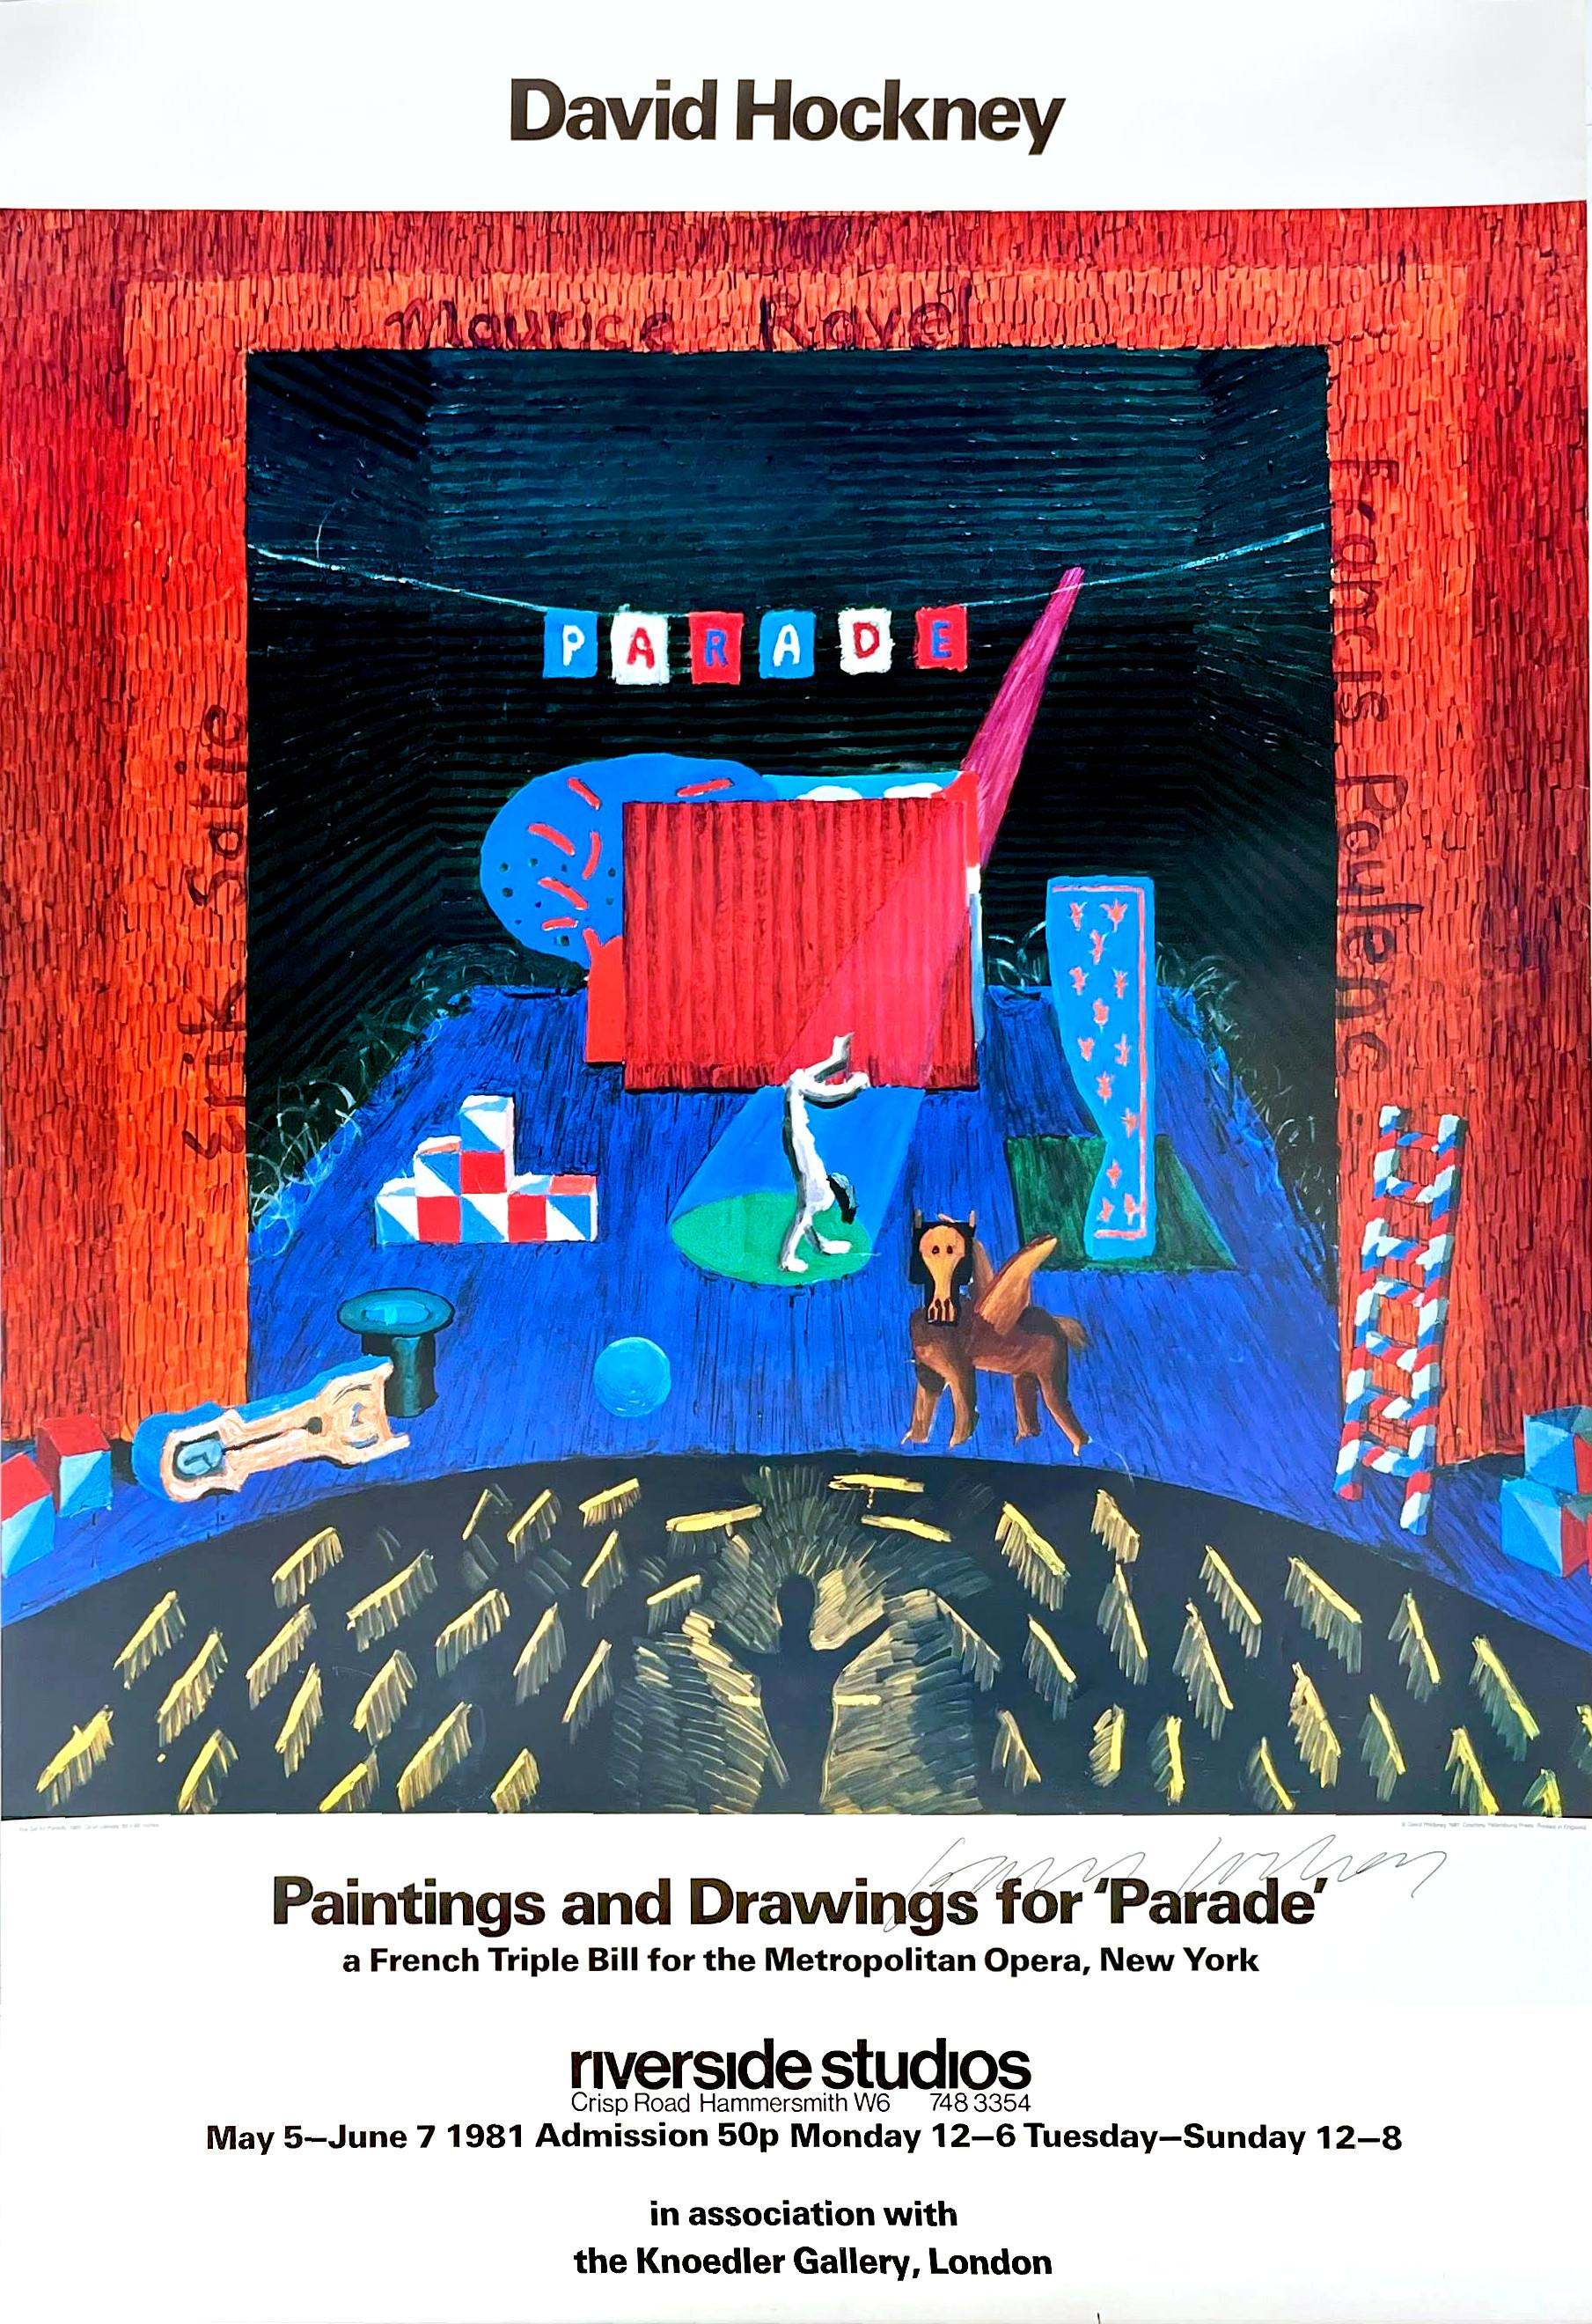 David Hockney
Gemälde und Zeichnungen für die Parade - Metropolitan Museum (handsigniert von David Hockney), 1981
Offset-Lithographie. Handsigniert von David Hockney
39 × 27 Zoll
Vom Künstler handsigniert, auf der Vorderseite in schwarzer Tinte von